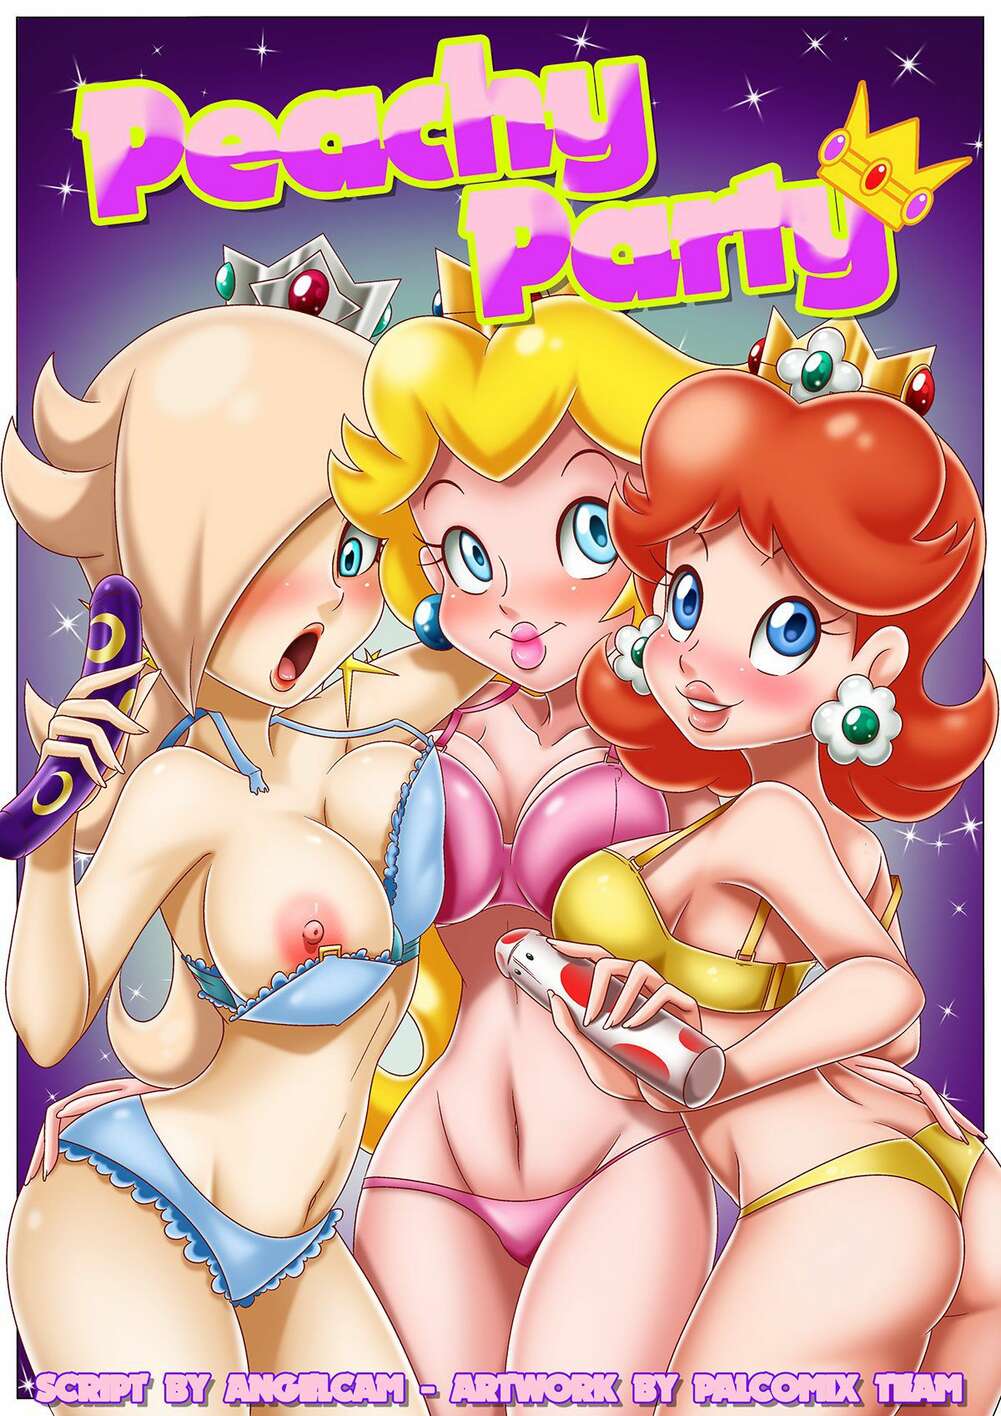 1001px x 1416px - âœ…ï¸ Porn comic Peachy Party. Mario Series. Sex comic party, she took | Porn  comics in English for adults only | sexkomix2.com